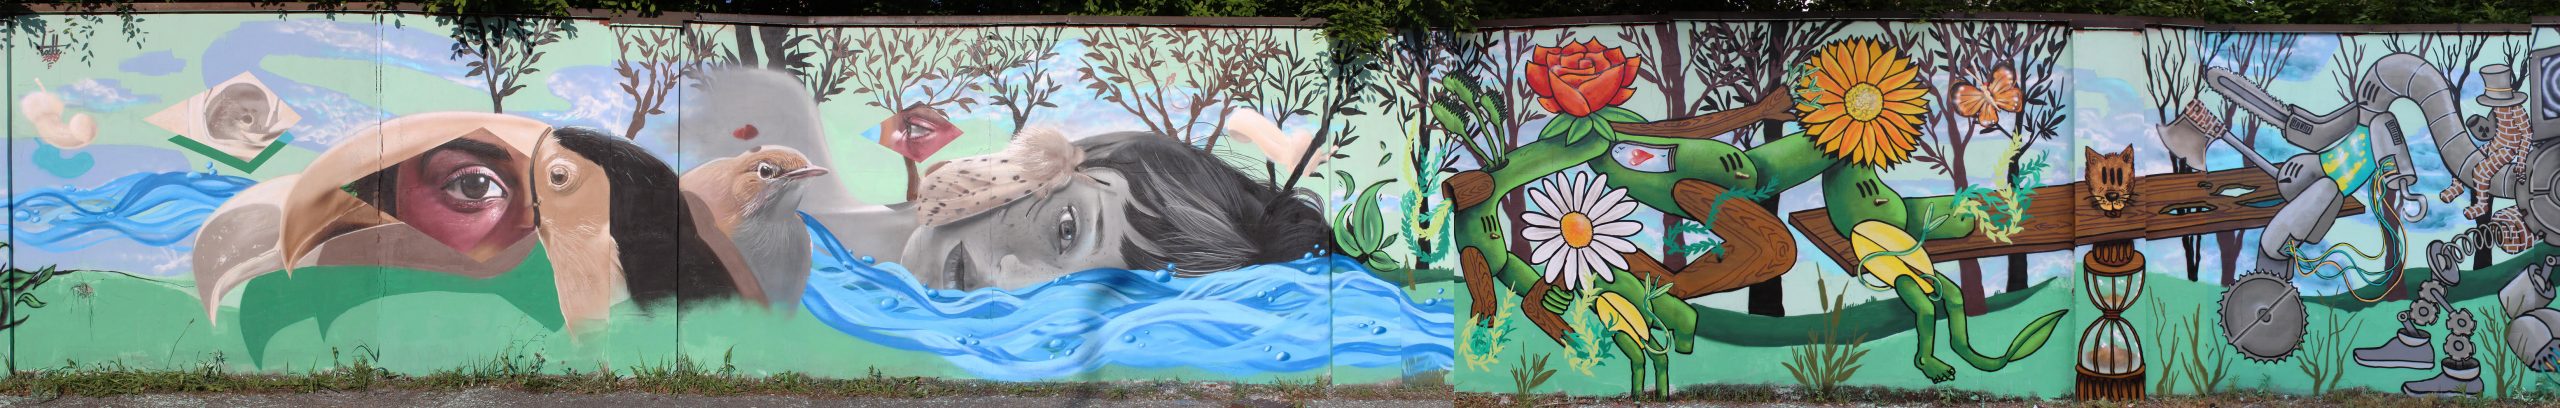 murales ambiente reggio emilia